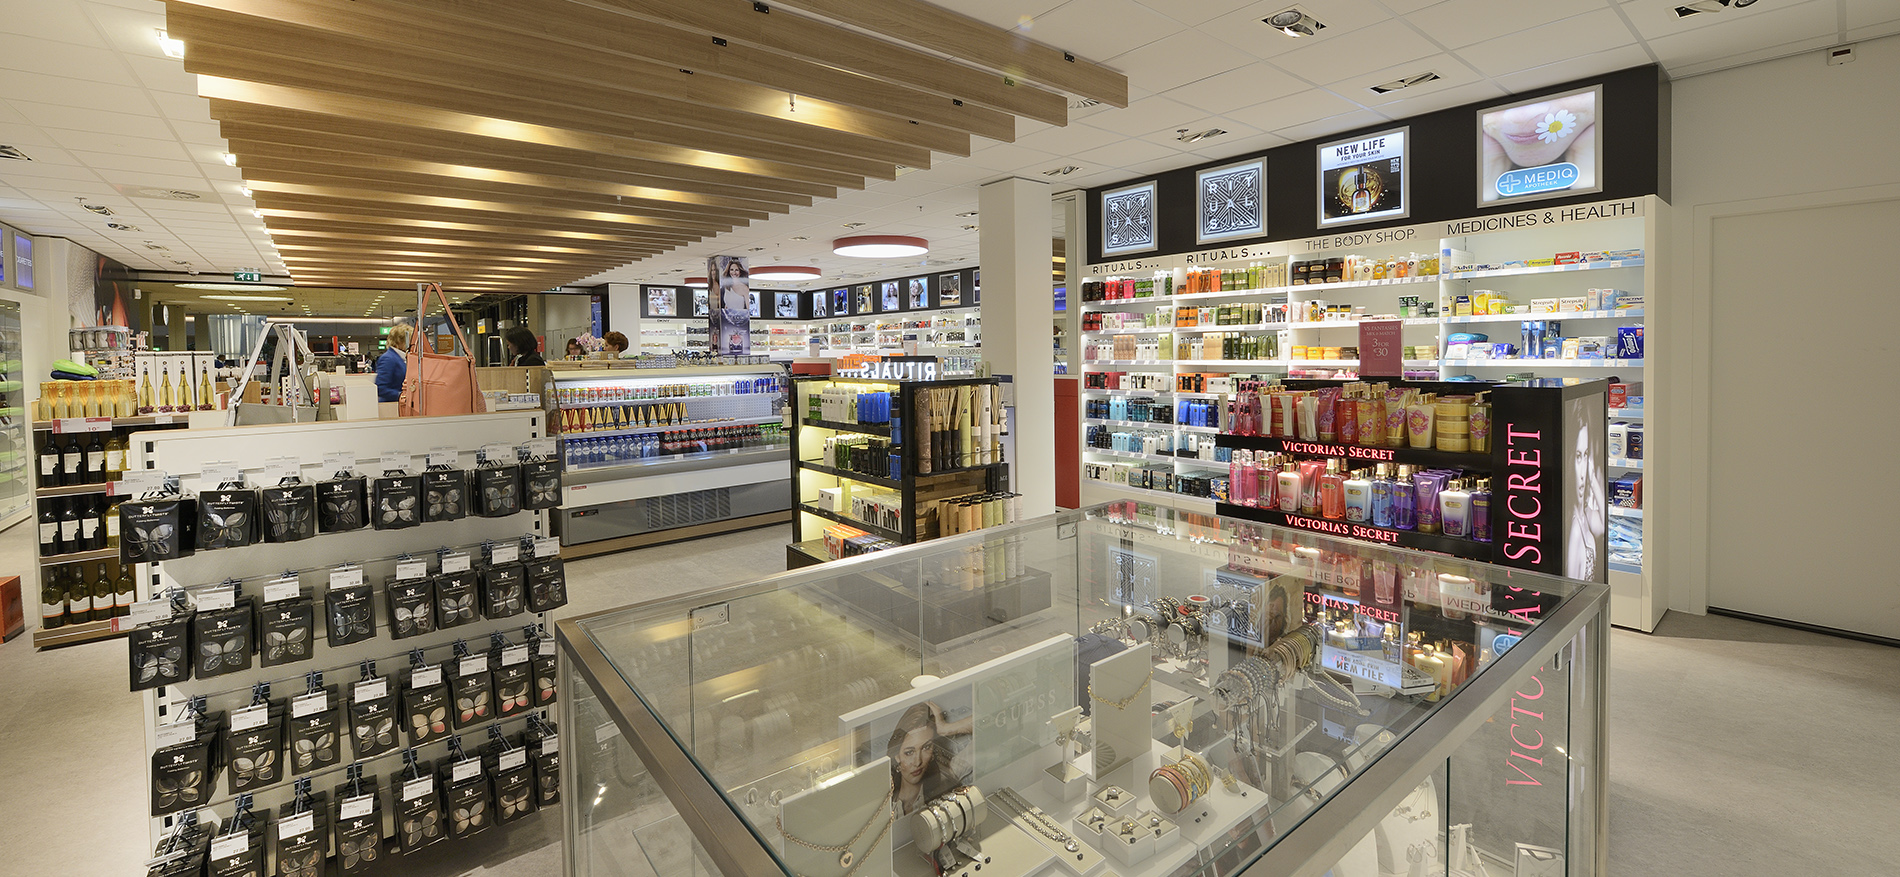 B&S Crewshop Airport Schiphol (NL) – Einrichtung Flughafen Shop - Retail design